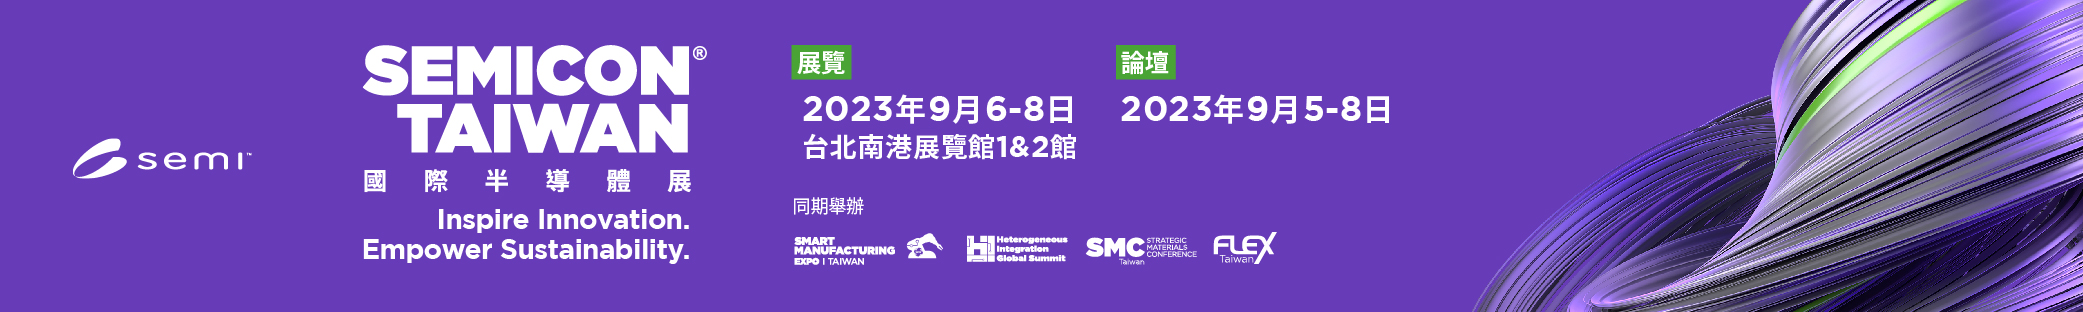 SEMICON Taiwan 2023 國際半導體展